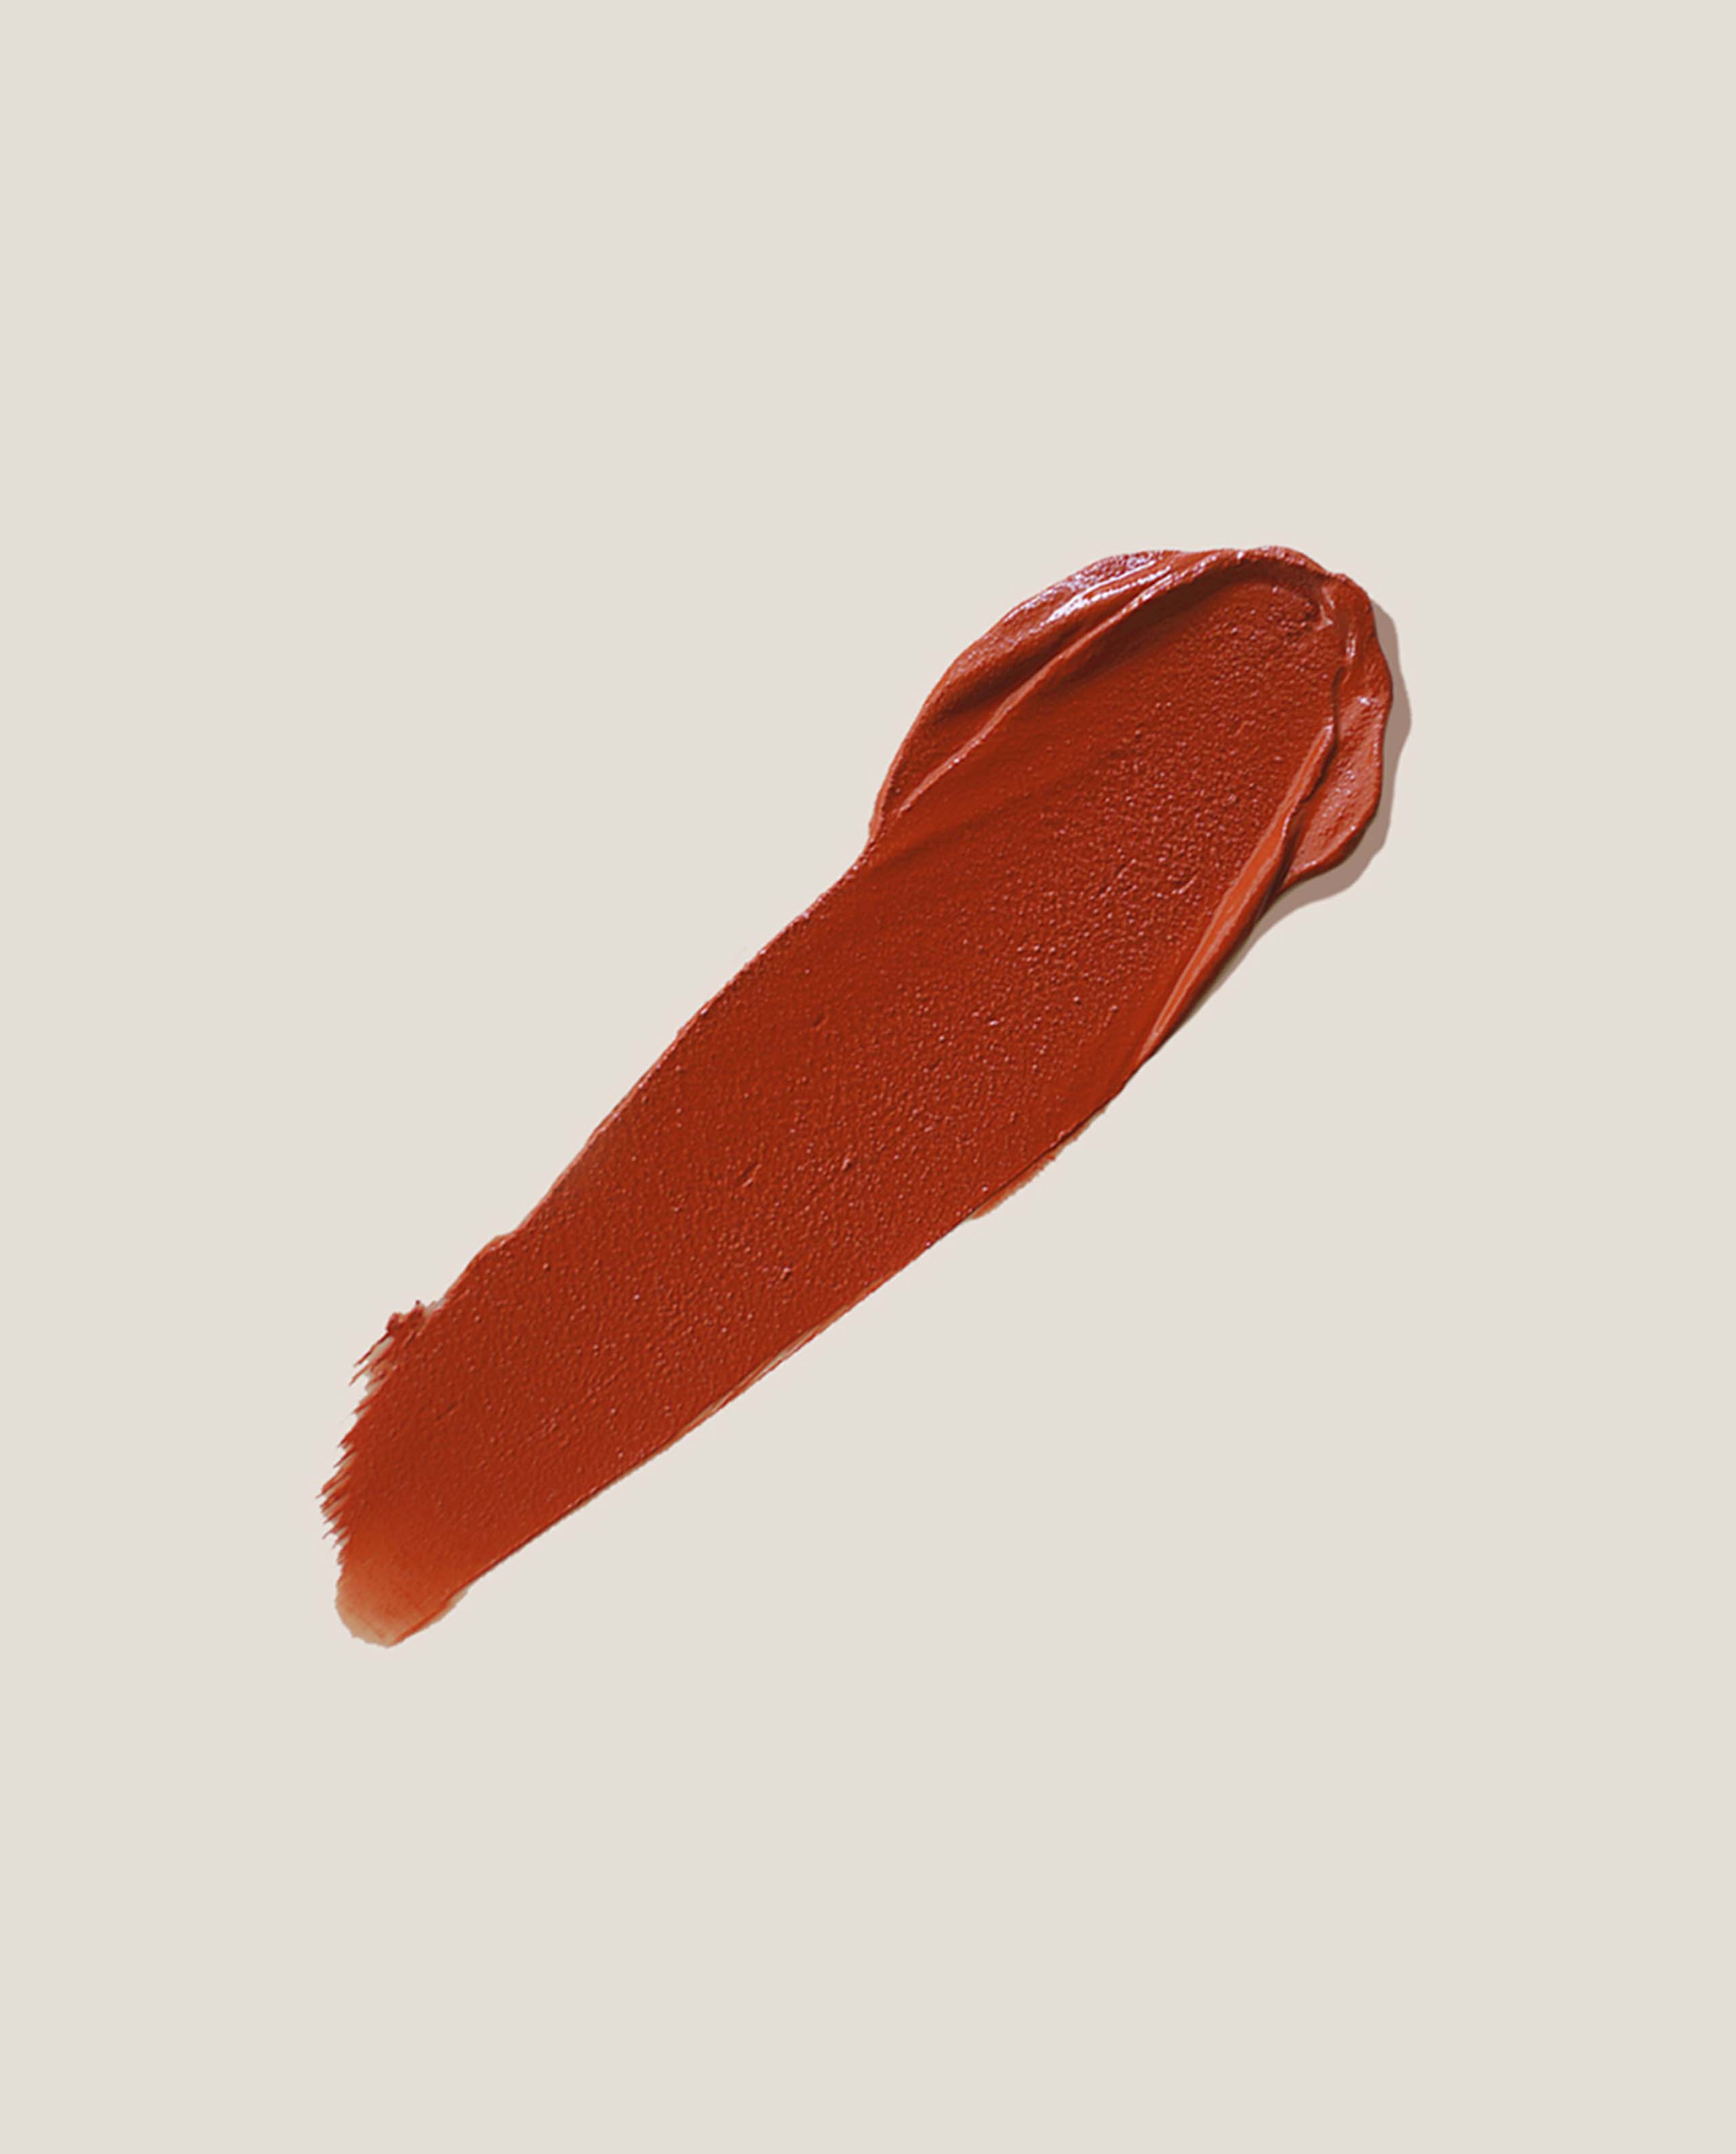 marché commun eclo maquillage beauté clean naturel zéro-déchet rouge à lèvres rouge crush